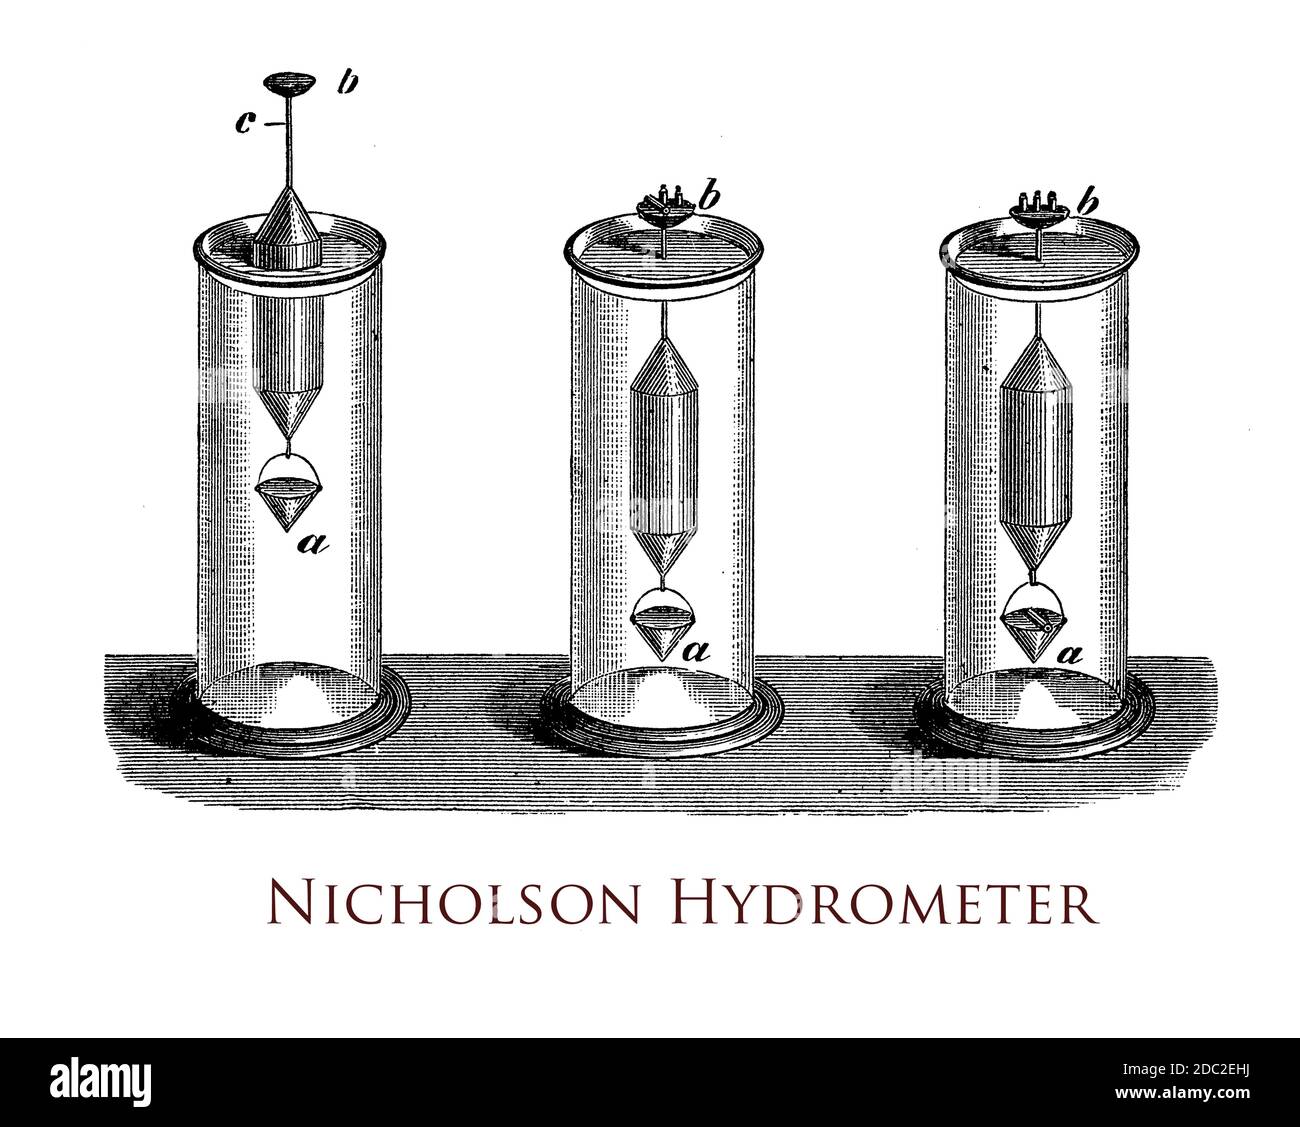 Das Nicholson-Hydrometer misst die relative Dichte von Flüssigkeiten auf der Basis des Auftriebs, wobei oben eine Pfanne für kleine Gewichte und unten ein korbähnlicher Behälter für die Probenahme stehen Stockfoto